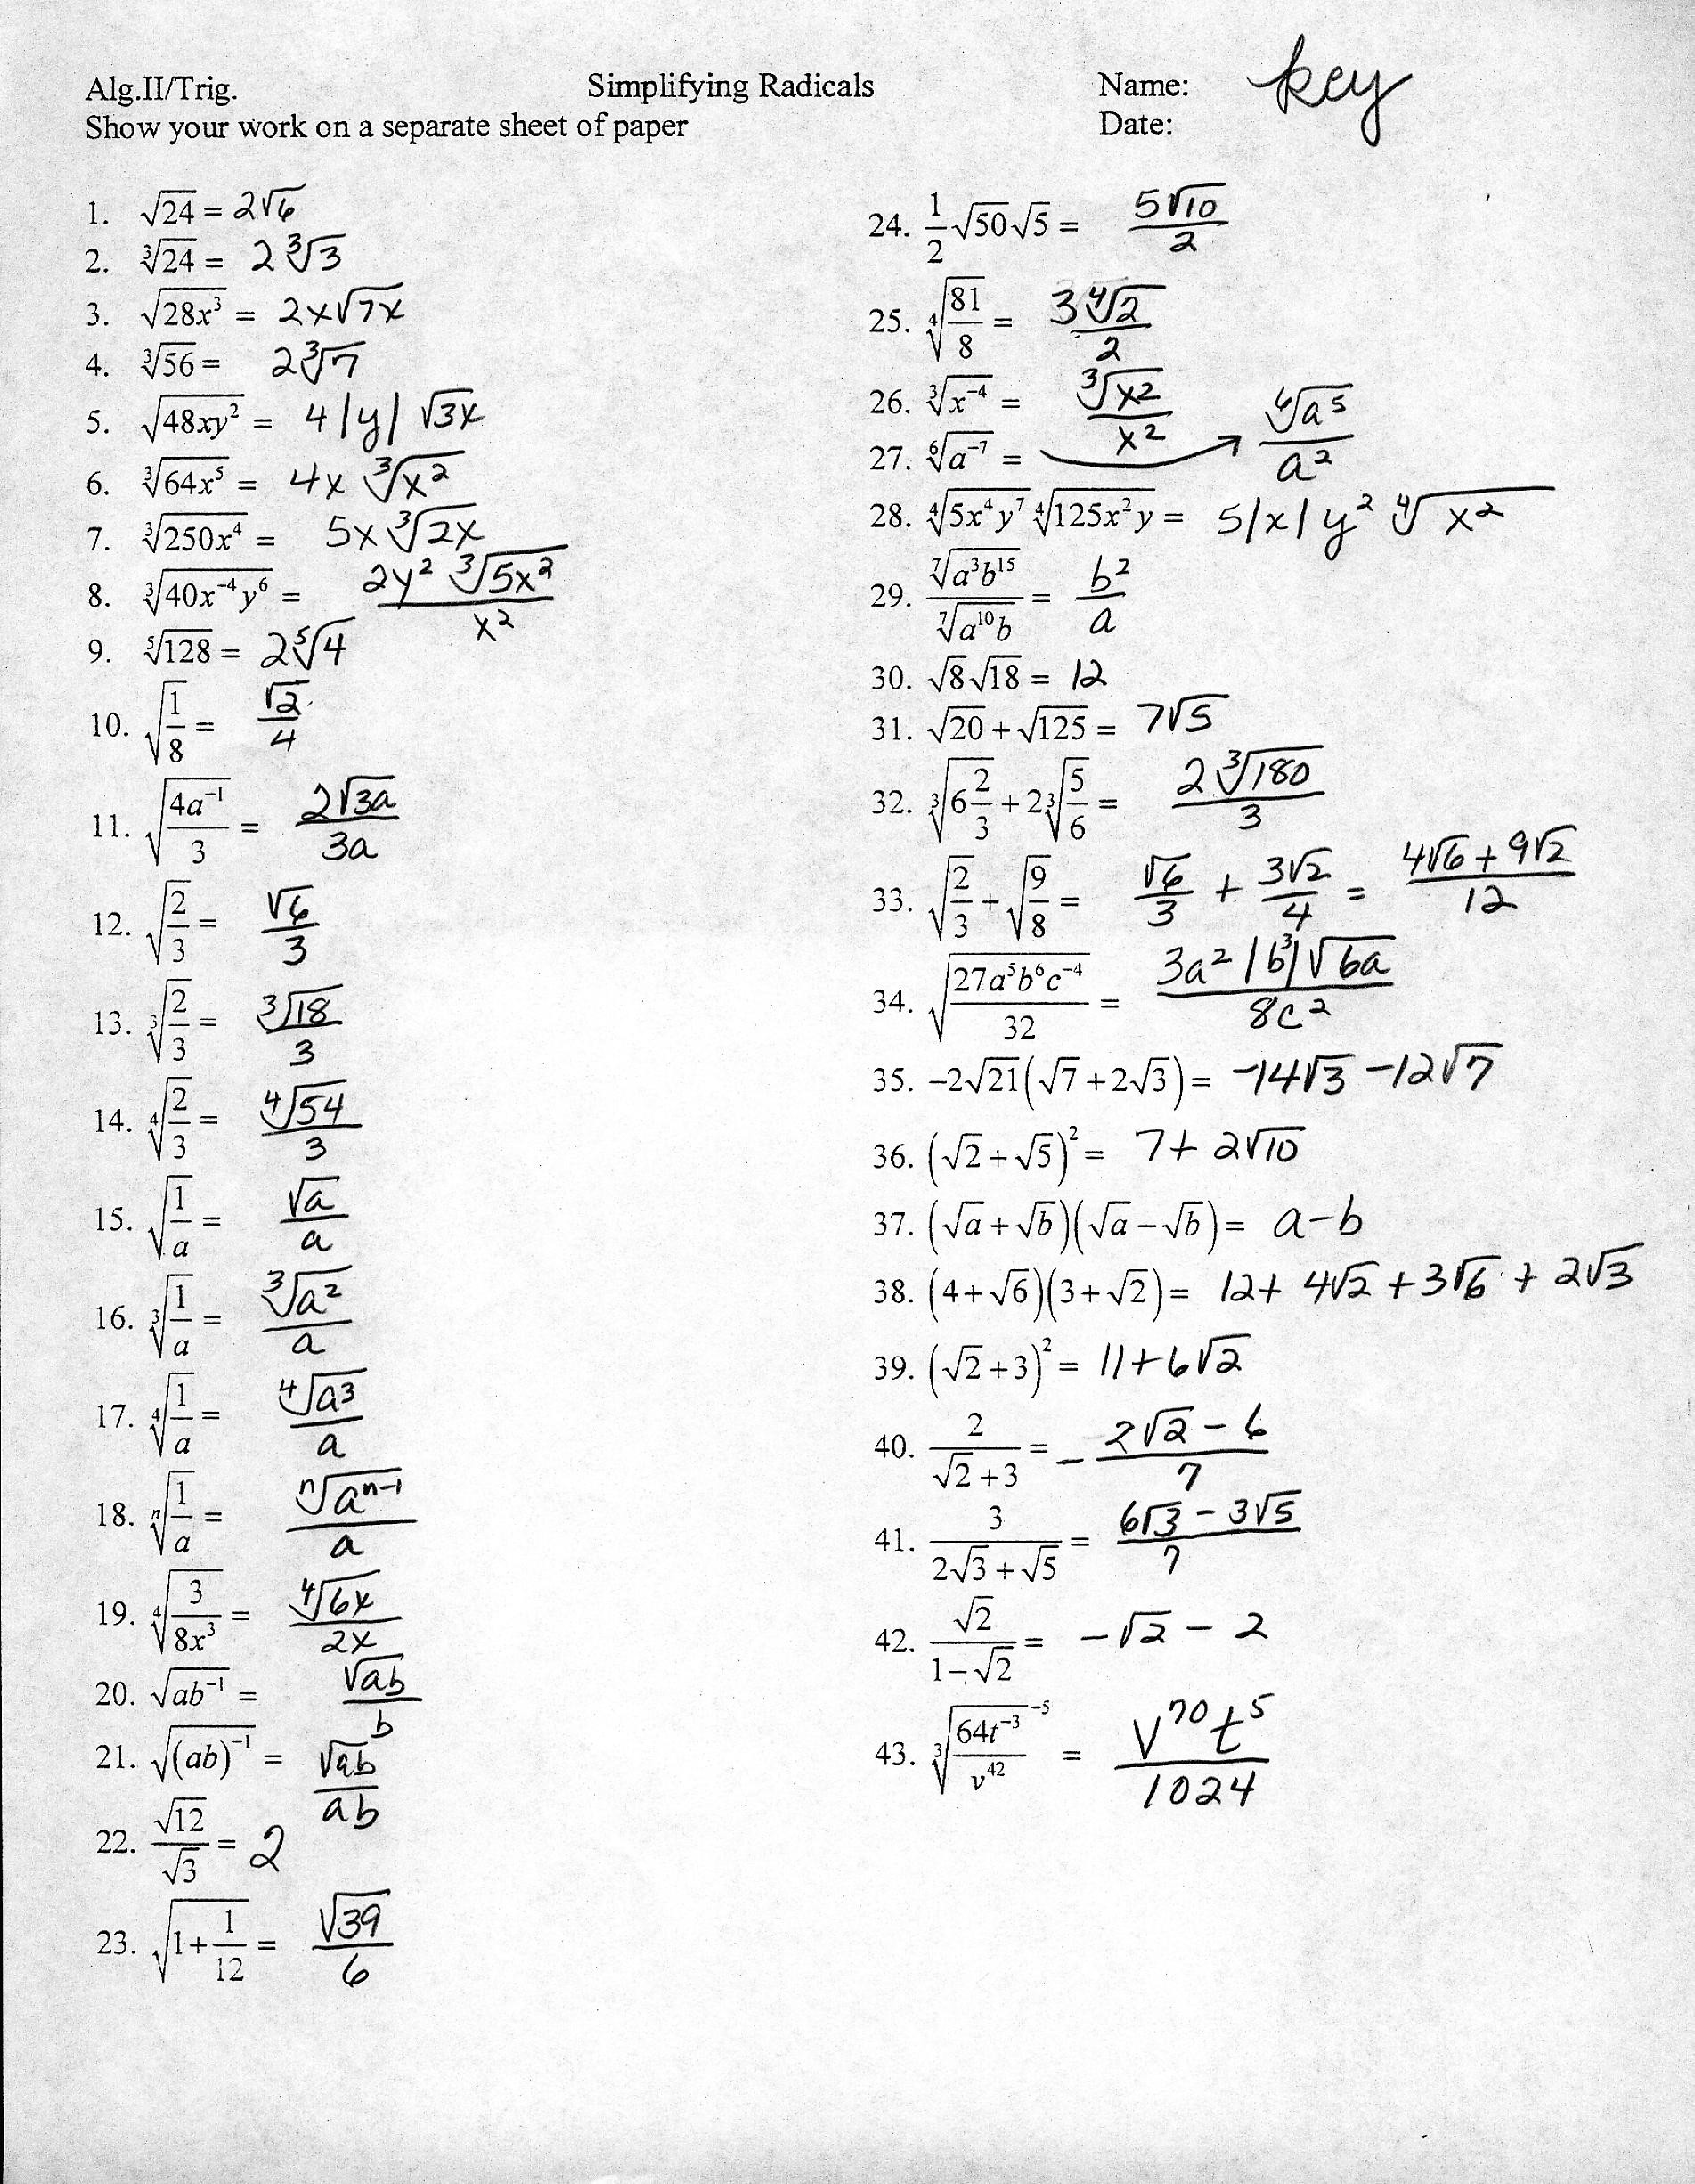 Simplifying Radicals Worksheet Pdf 35 Simplifying Radicals Worksheet 1 Answers Worksheet